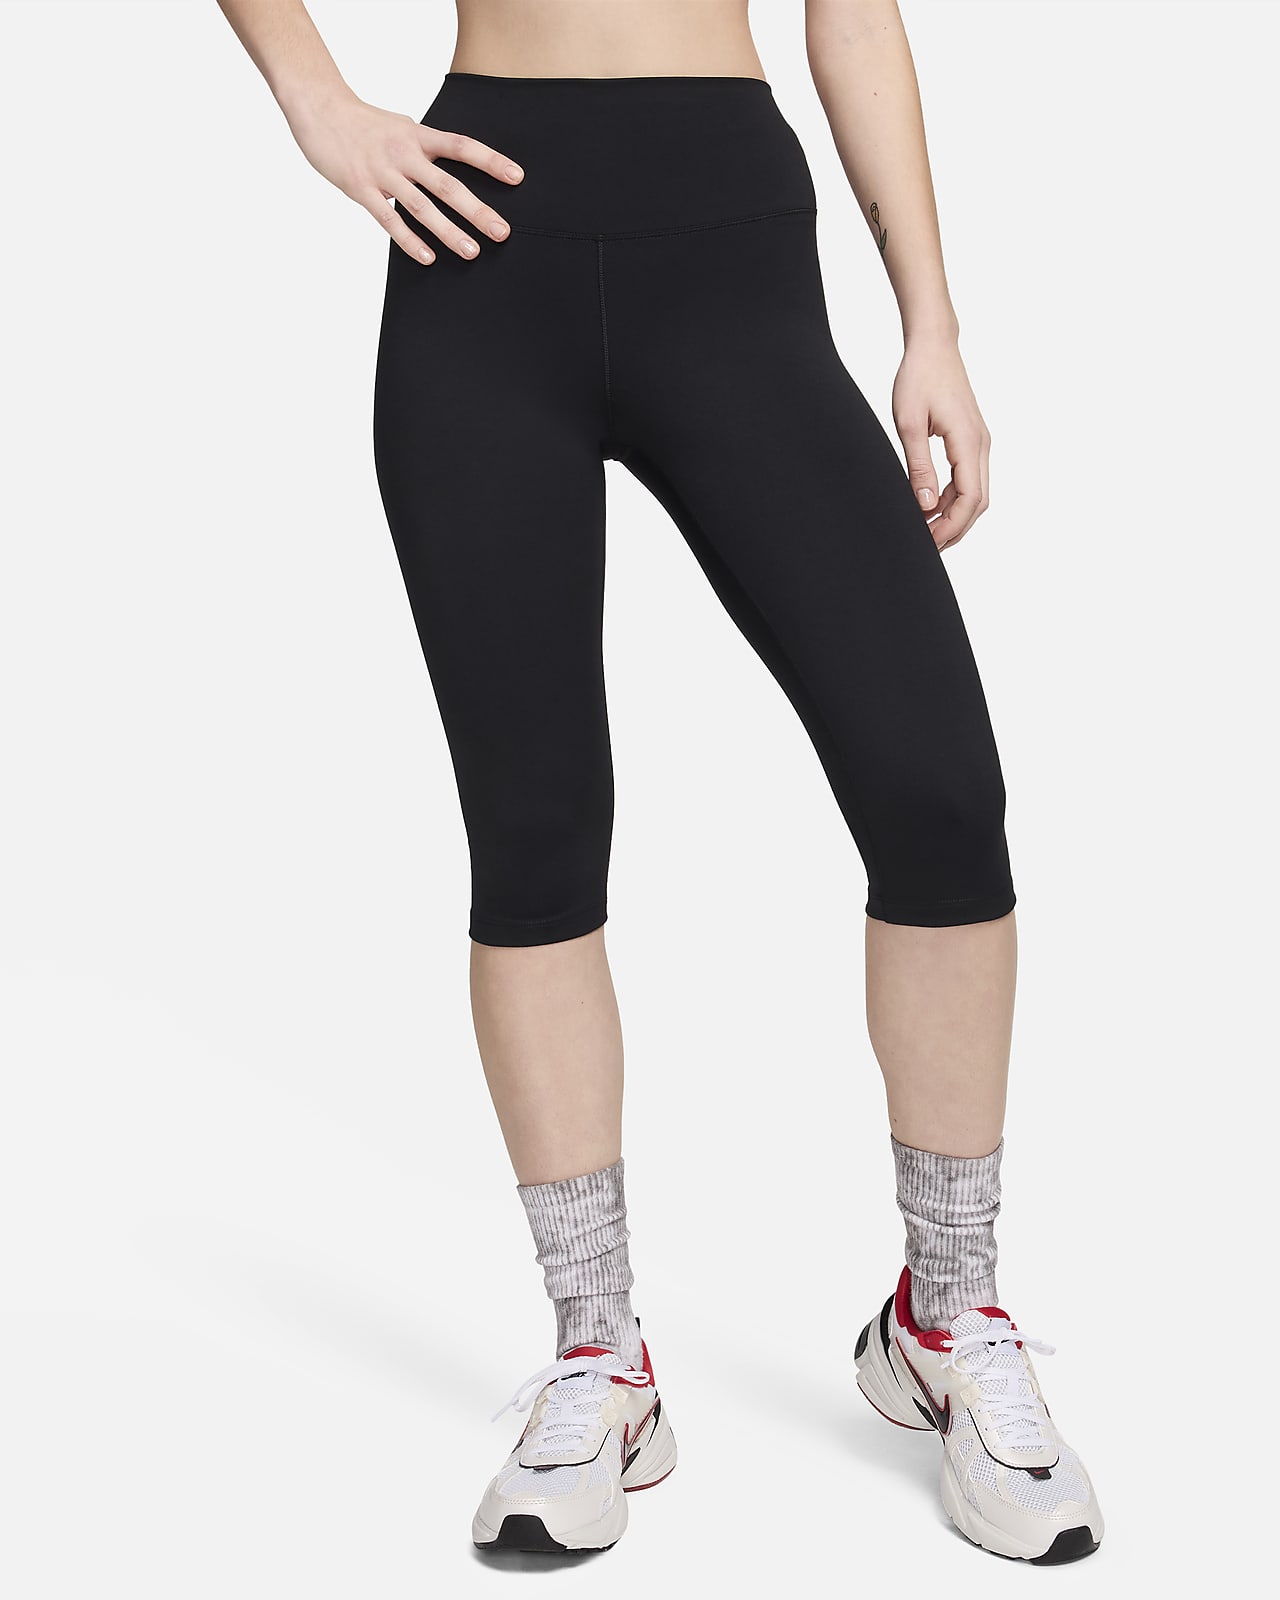 Nike One Women's Capri Leggings